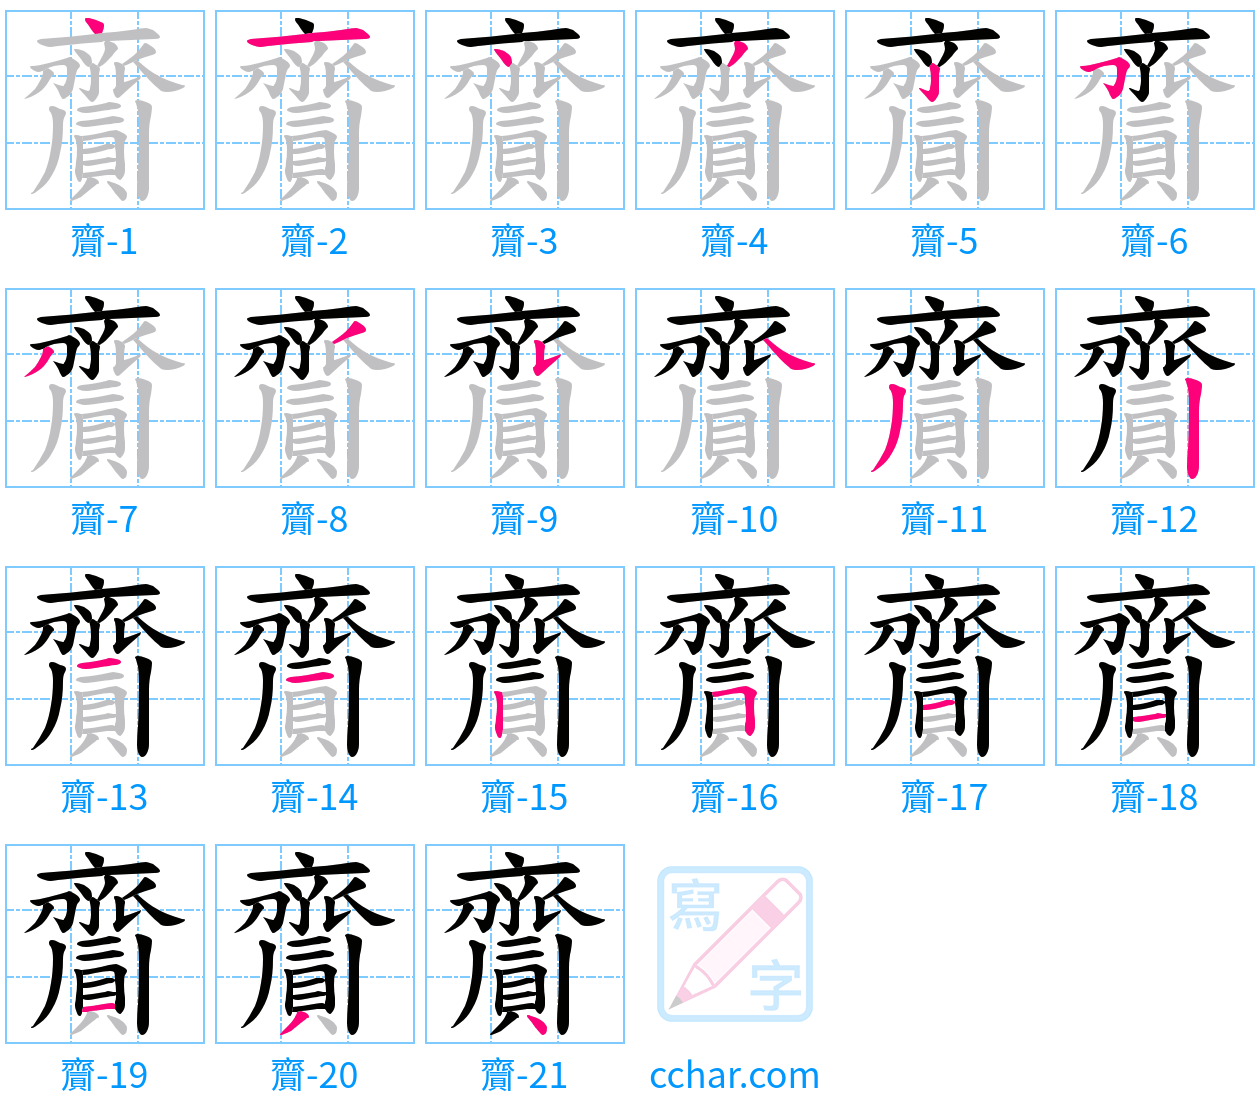 齎 stroke order step-by-step diagram